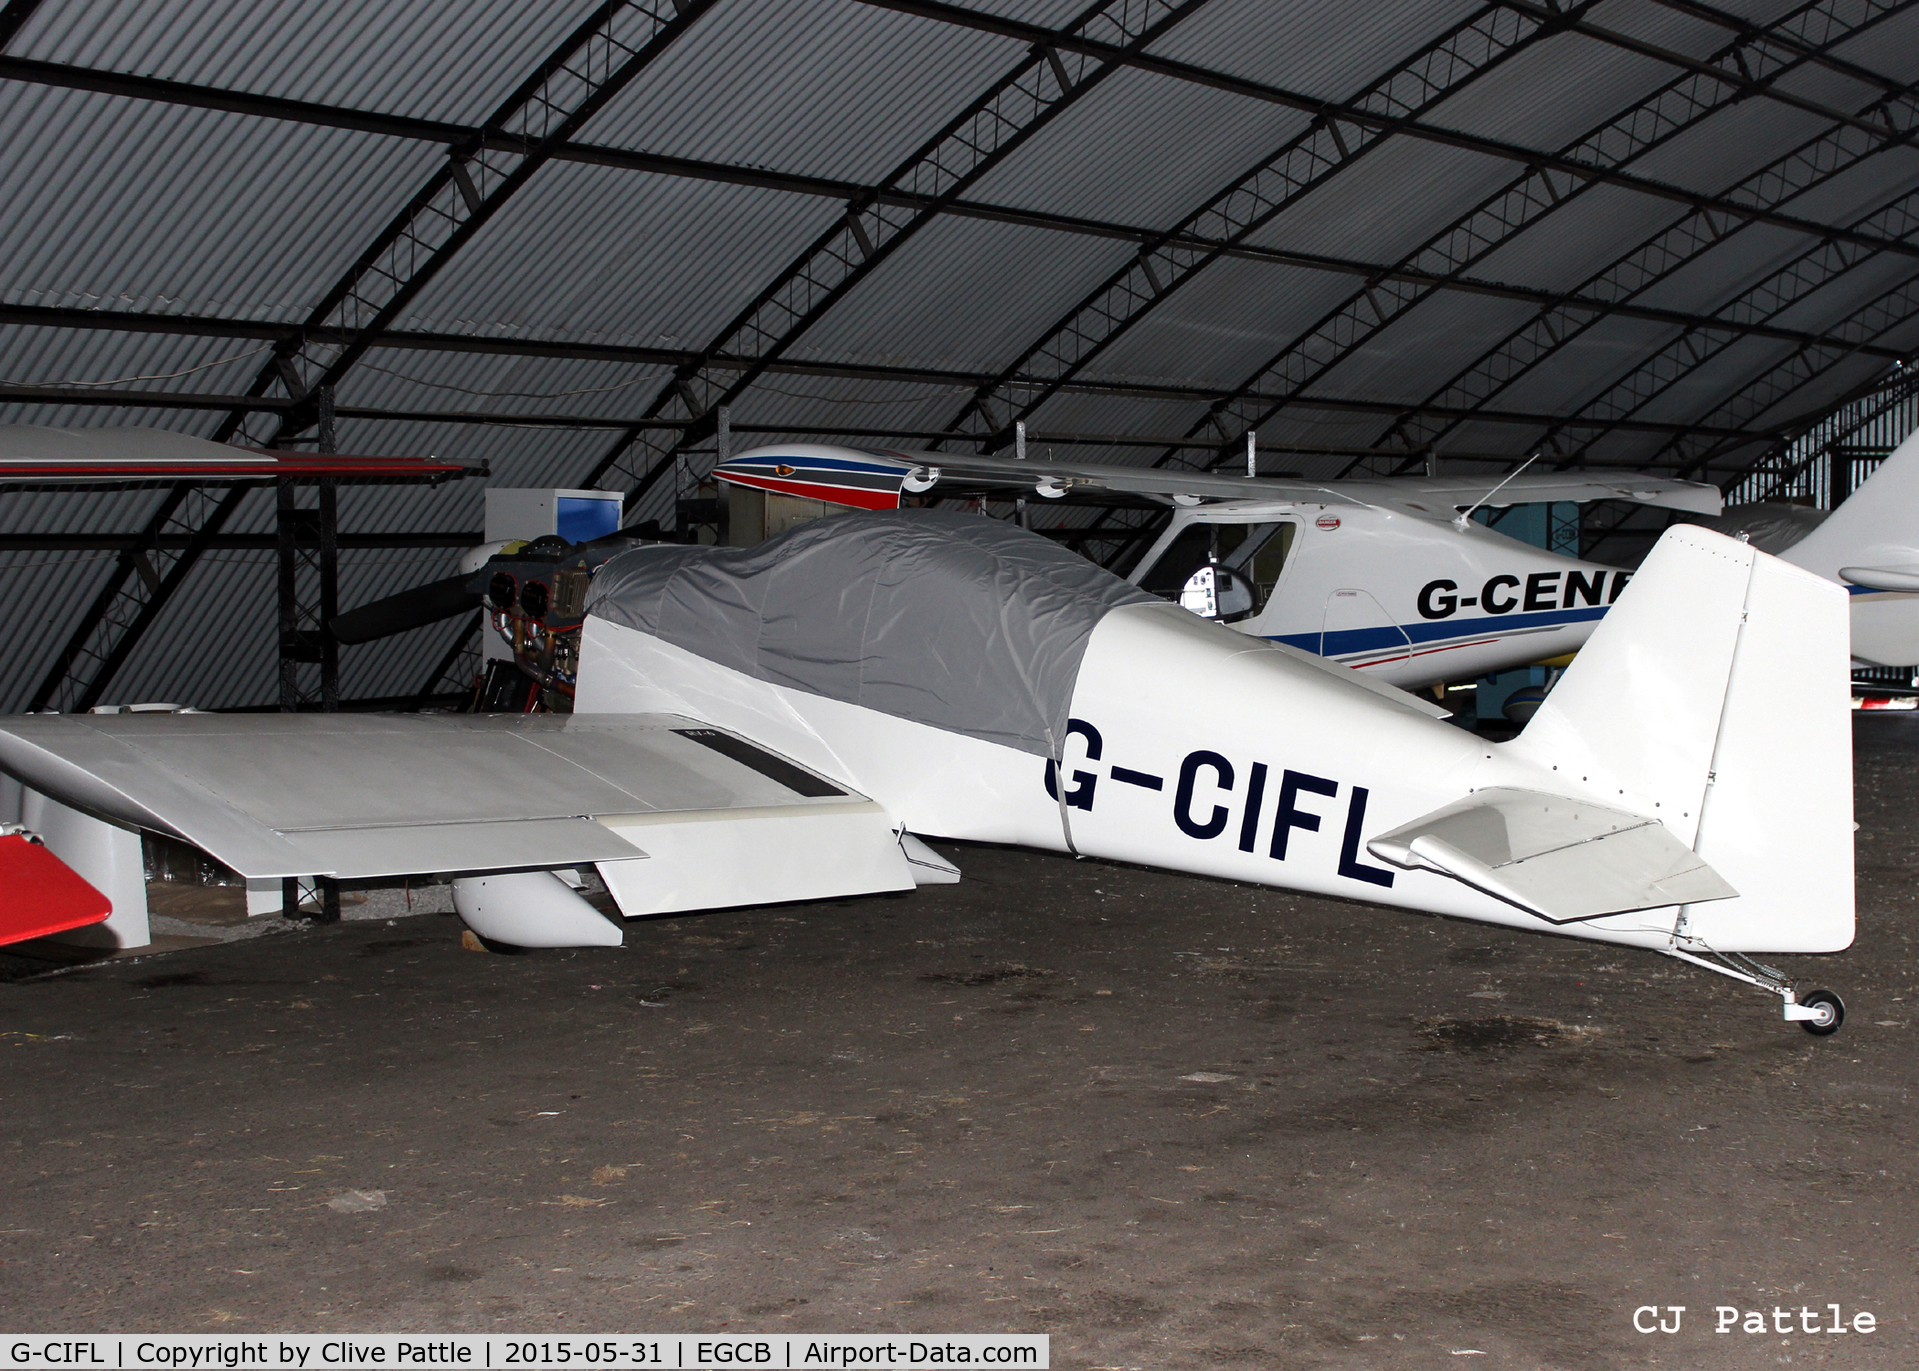 G-CIFL, 2014 Vans RV-6 C/N PFA181A-12290, Hangared at Barton airfield, Manchester - EGCB